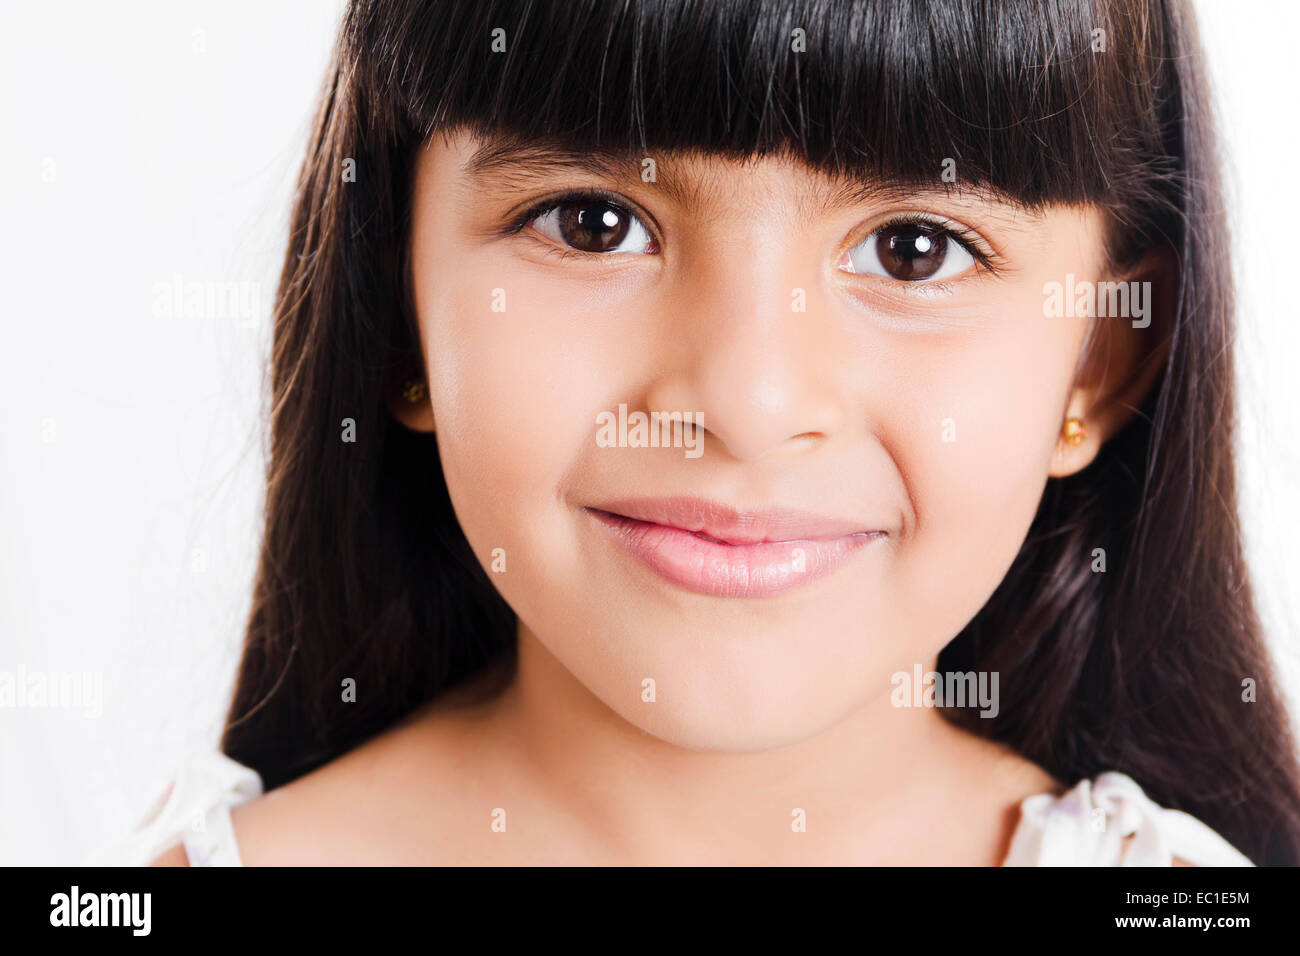 indian Beautiful Child Stock Photo